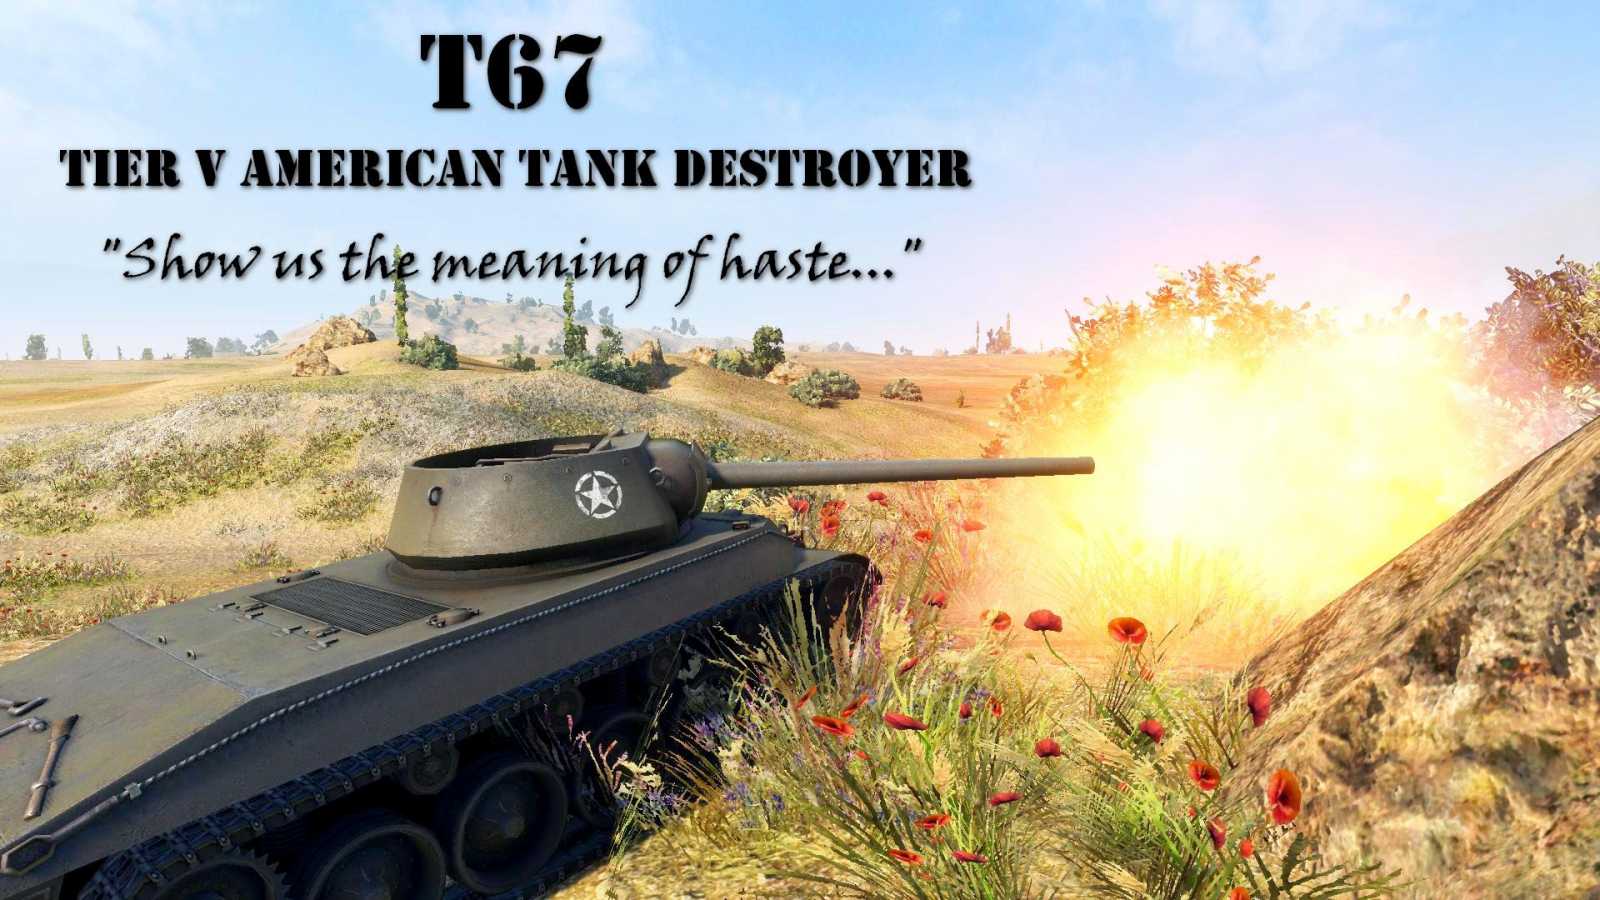 Opravdu je T67 tak moc silná na svůj tier?